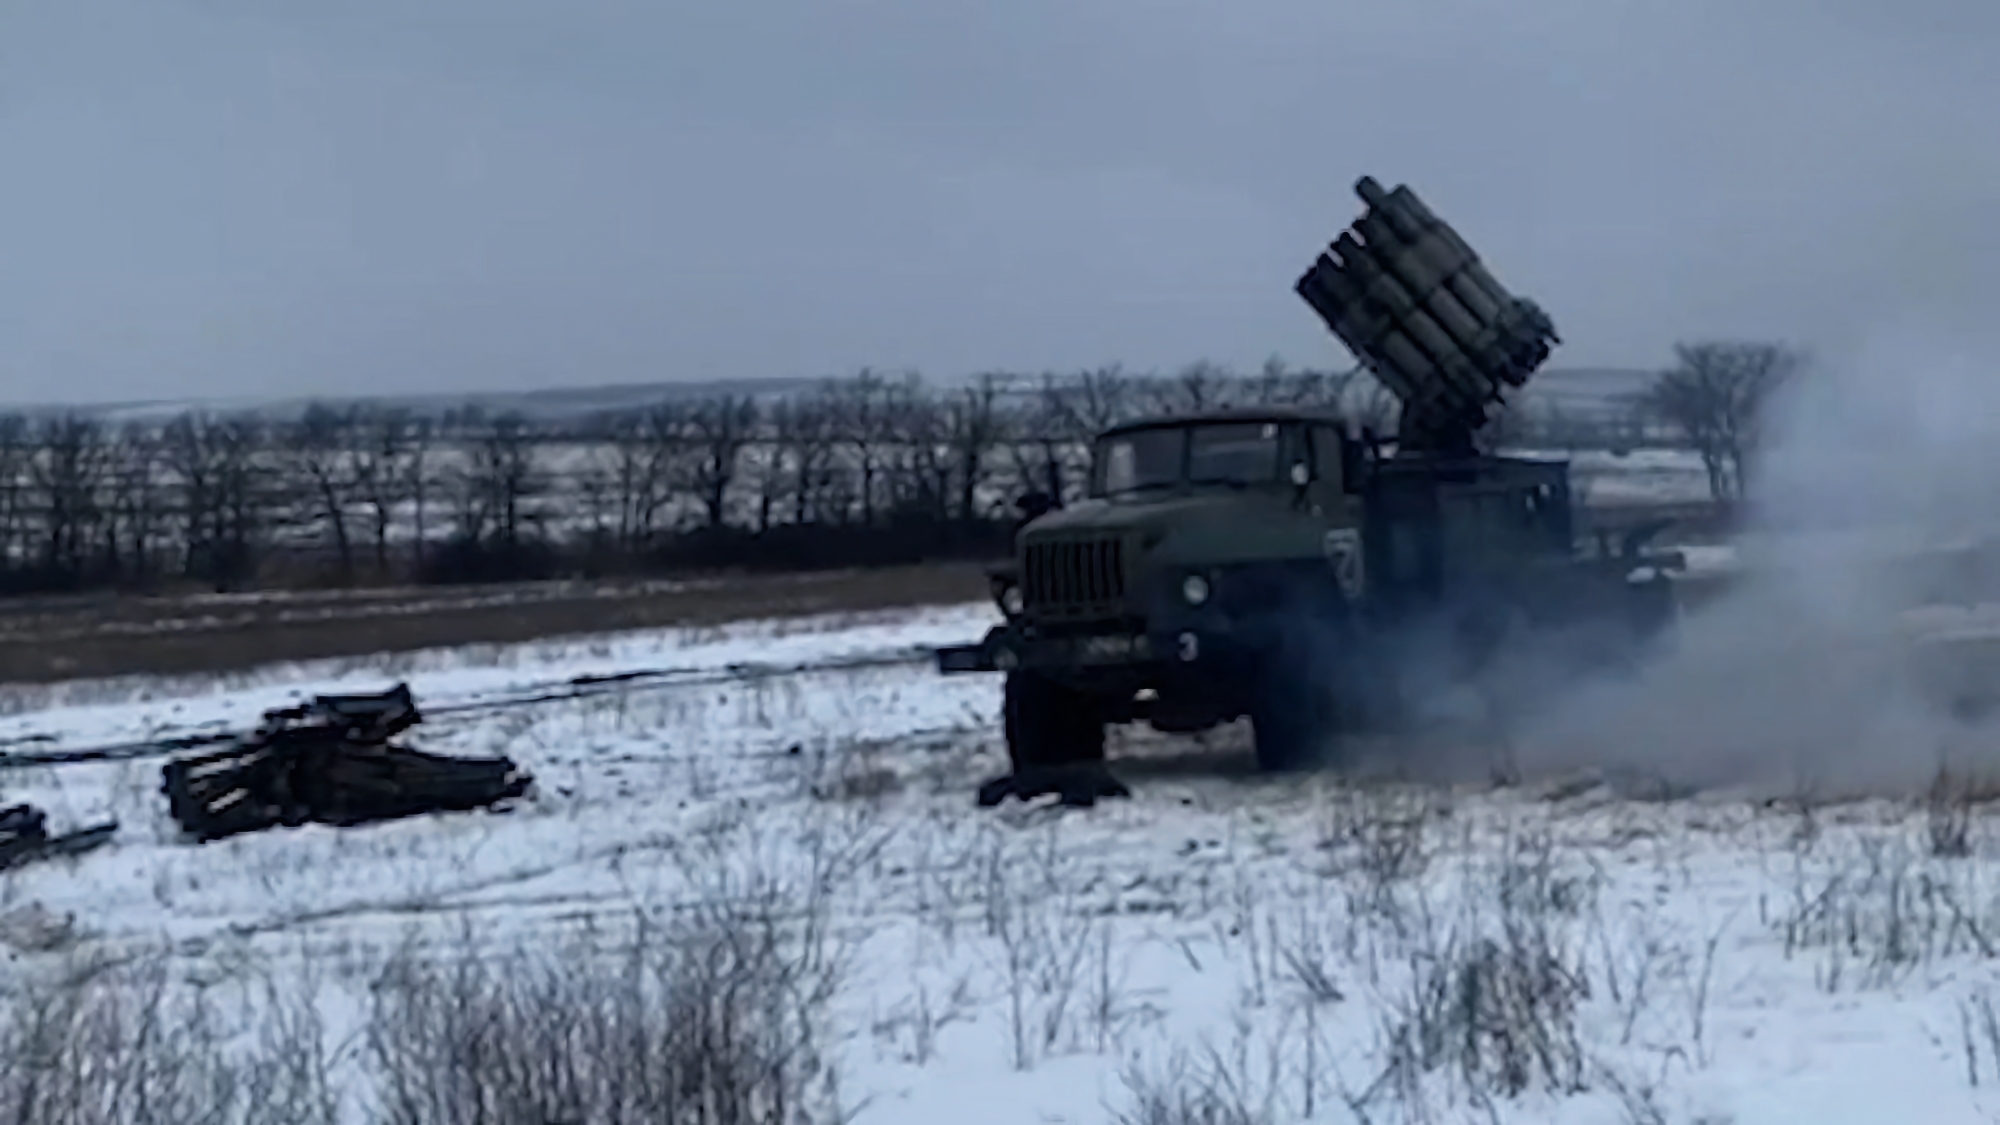 L'AFU ha distrutto un raro bombardiere russo RBU-6000 con l'aiuto dell'artiglieria (video)